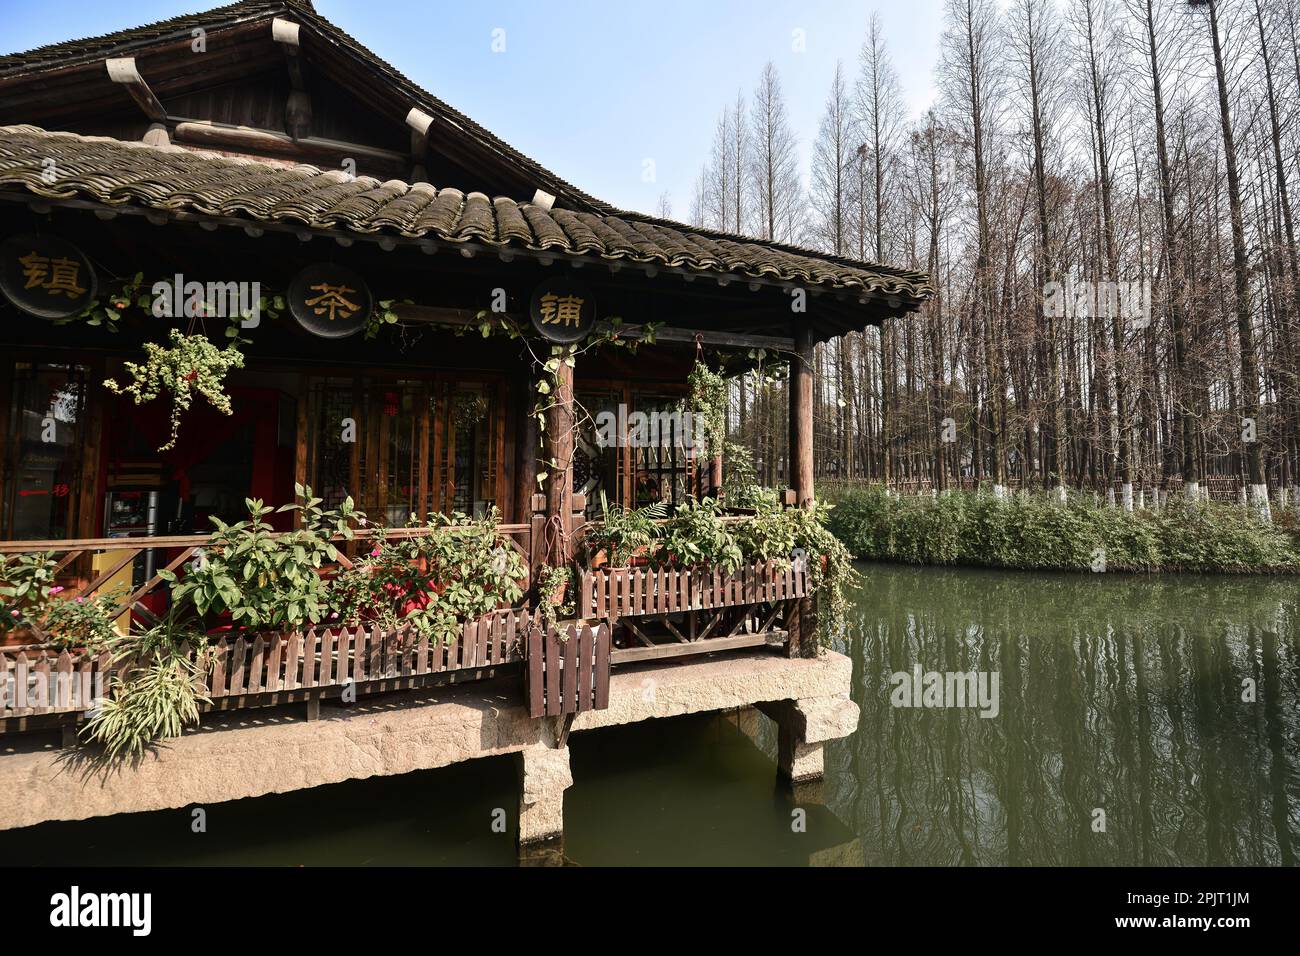 Pequeño río, barcos de madera, puentes de piedra y antiguas tiendas de madera pavimentadas con ladrillos de piedra en una pequeña ciudad de agua en el sur de China Foto de stock